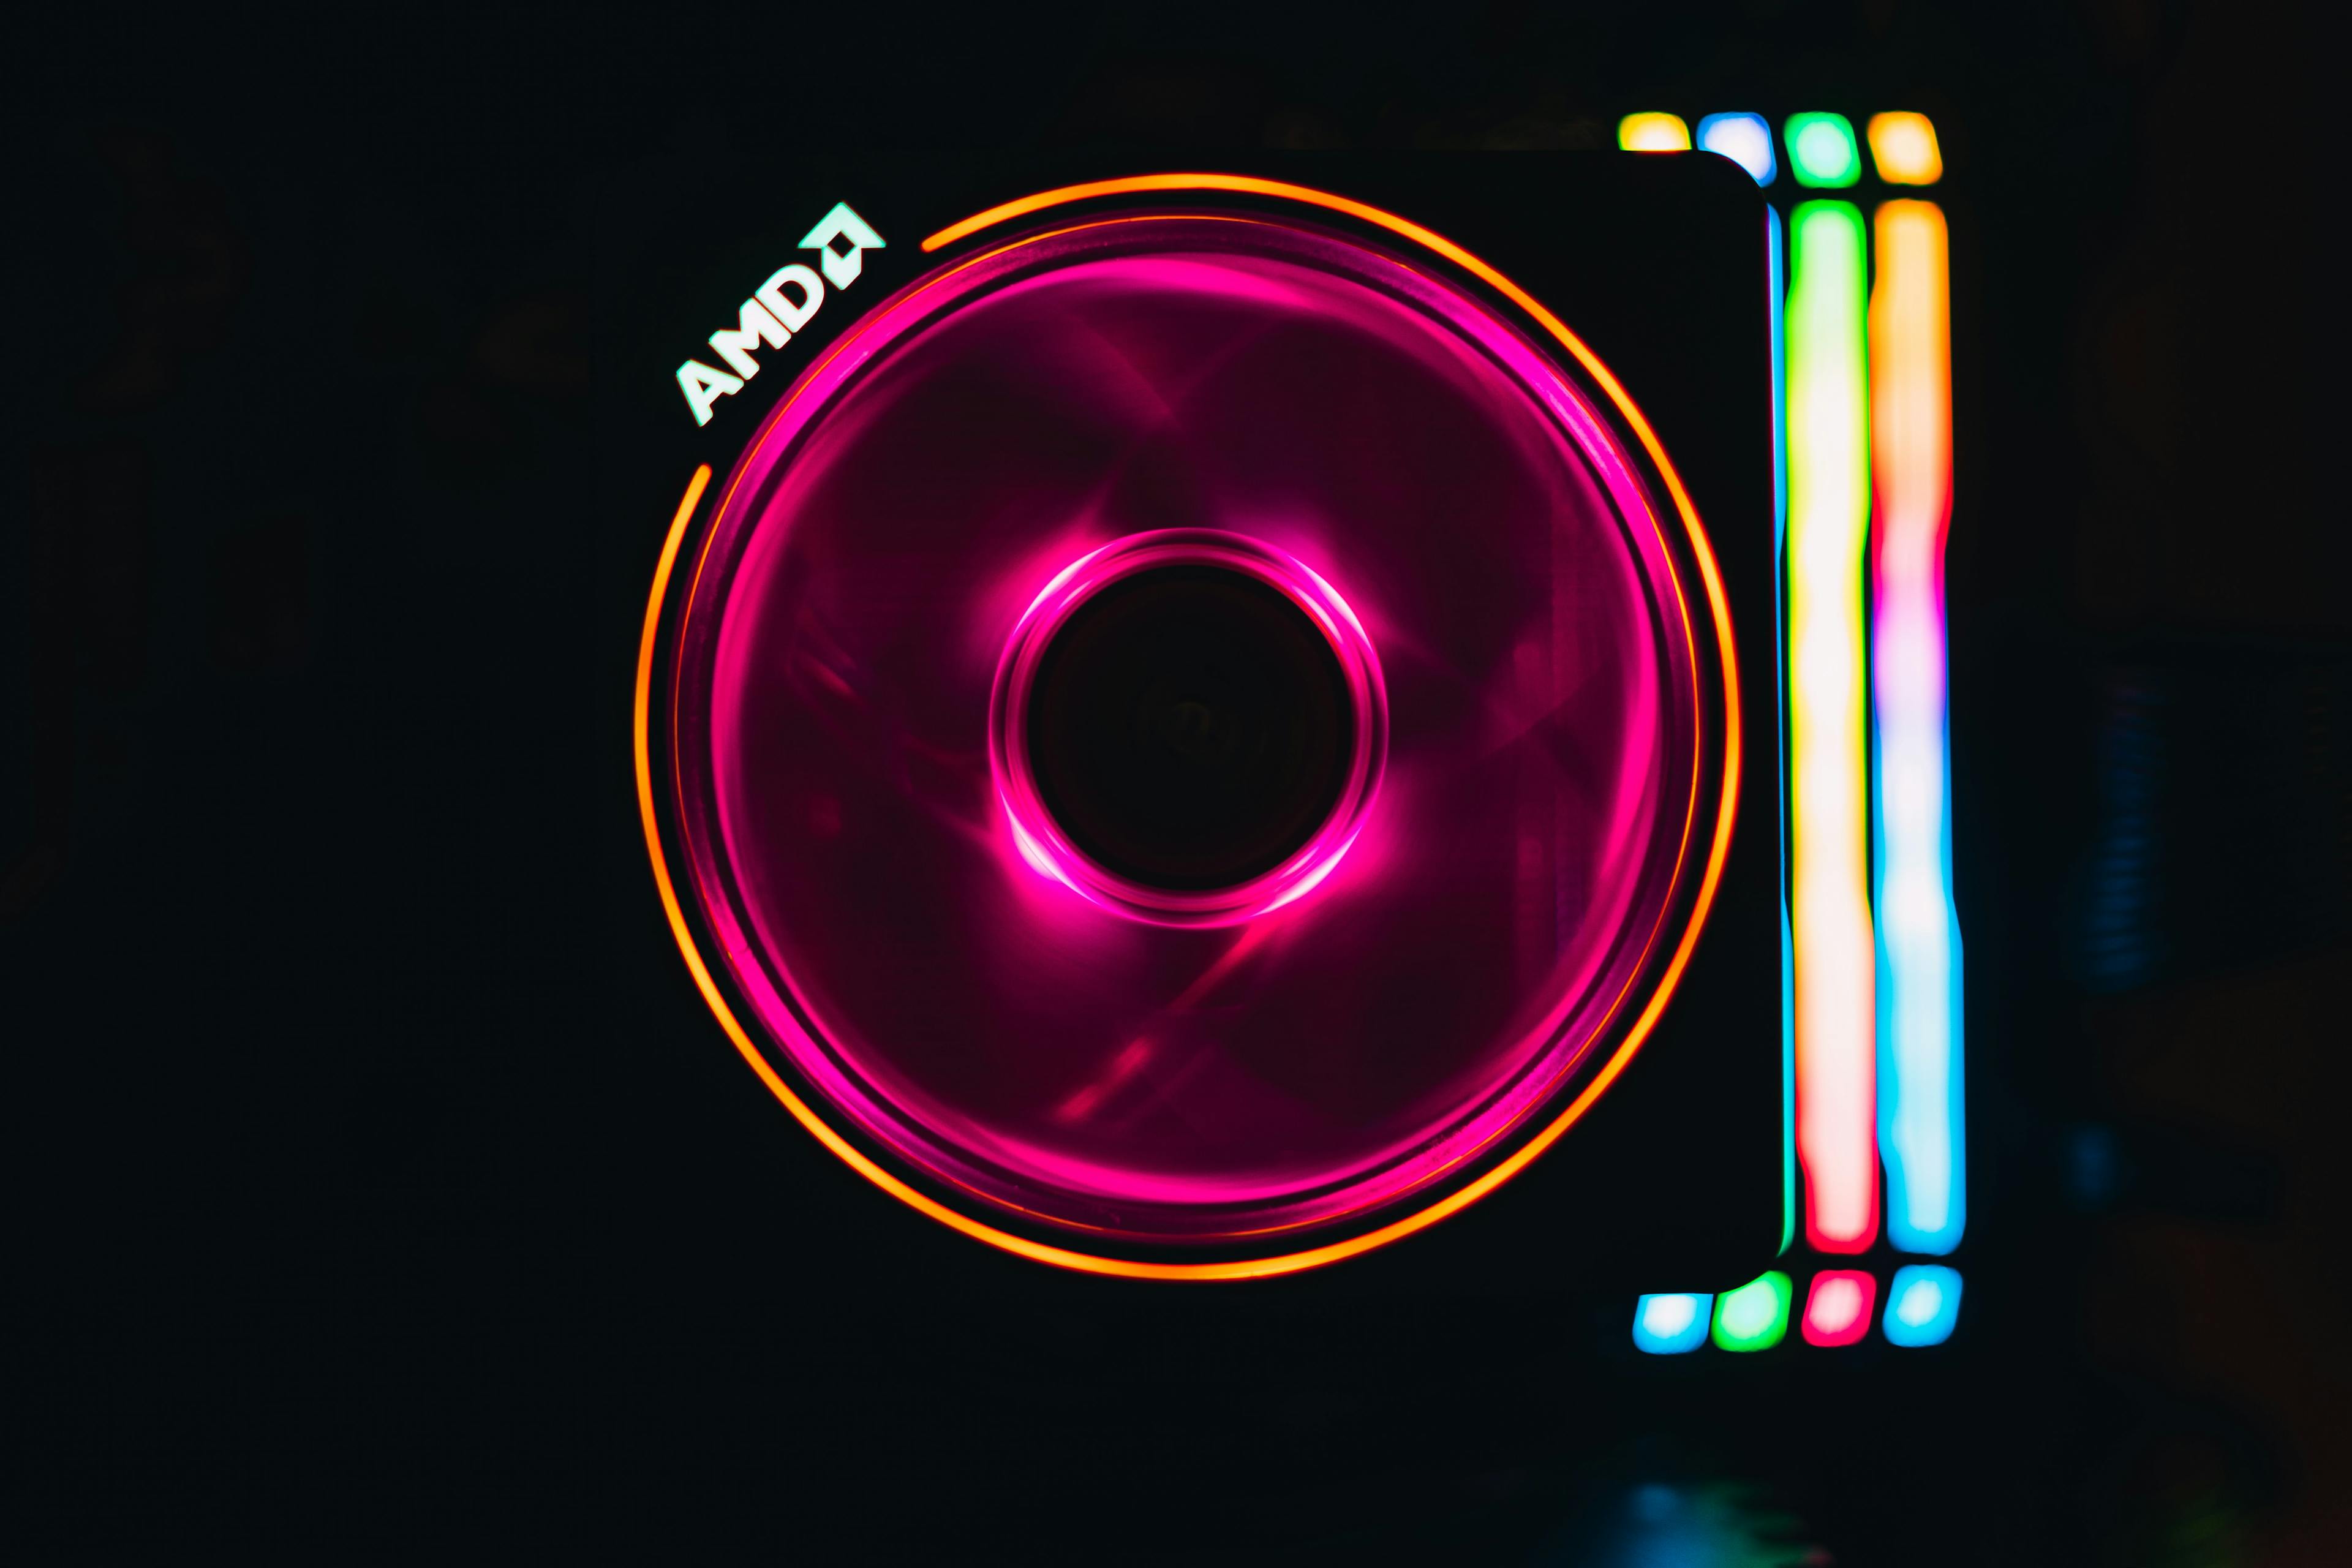 AMD logo by Timothy Dykes on Unsplash